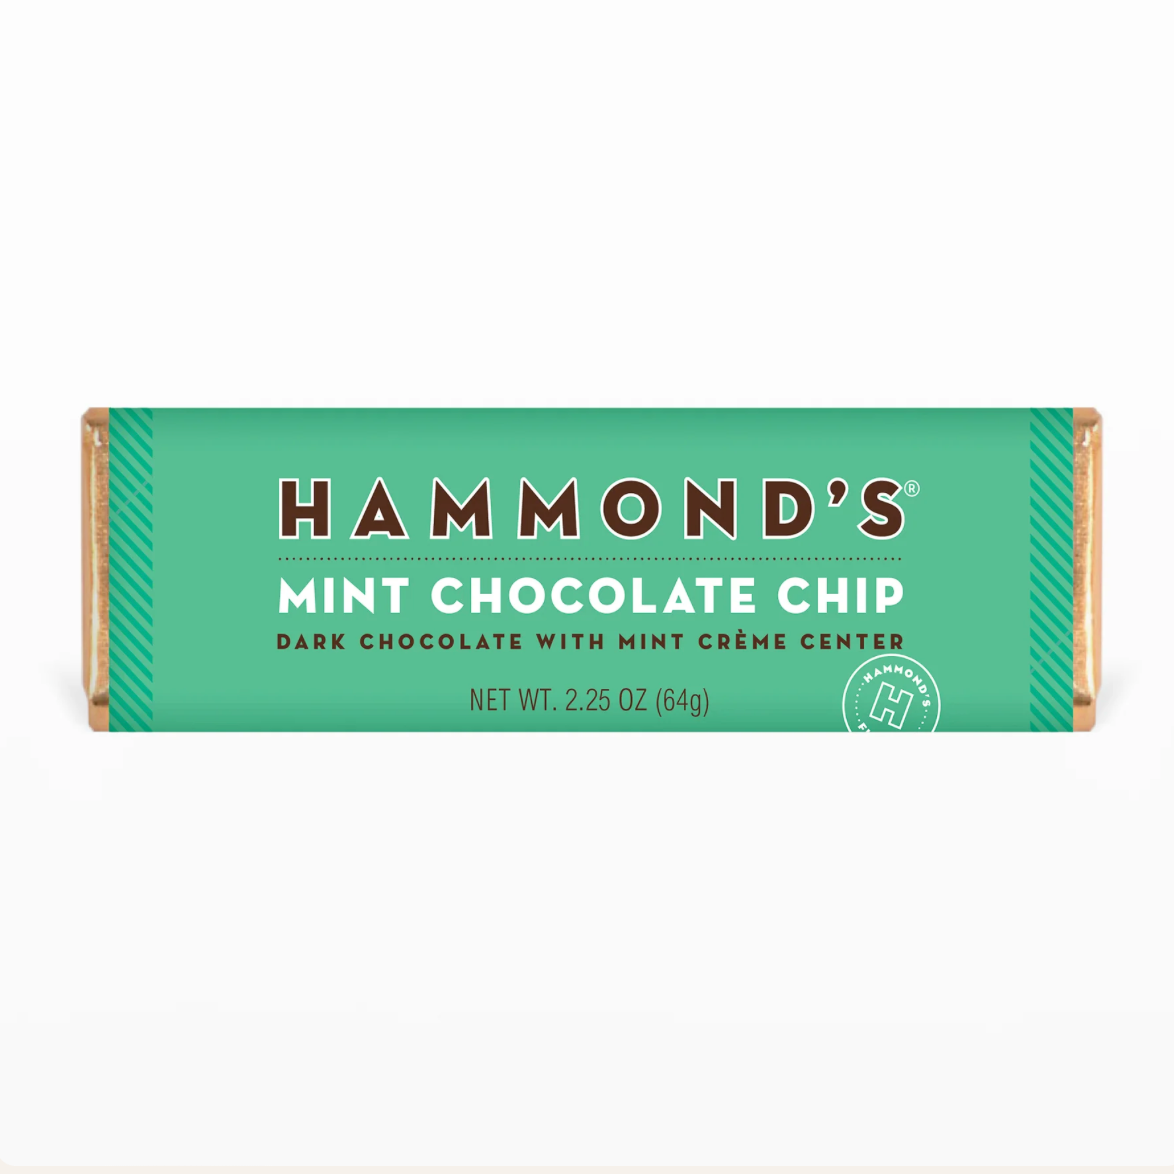 Hammond's Mint Chocolate Chip